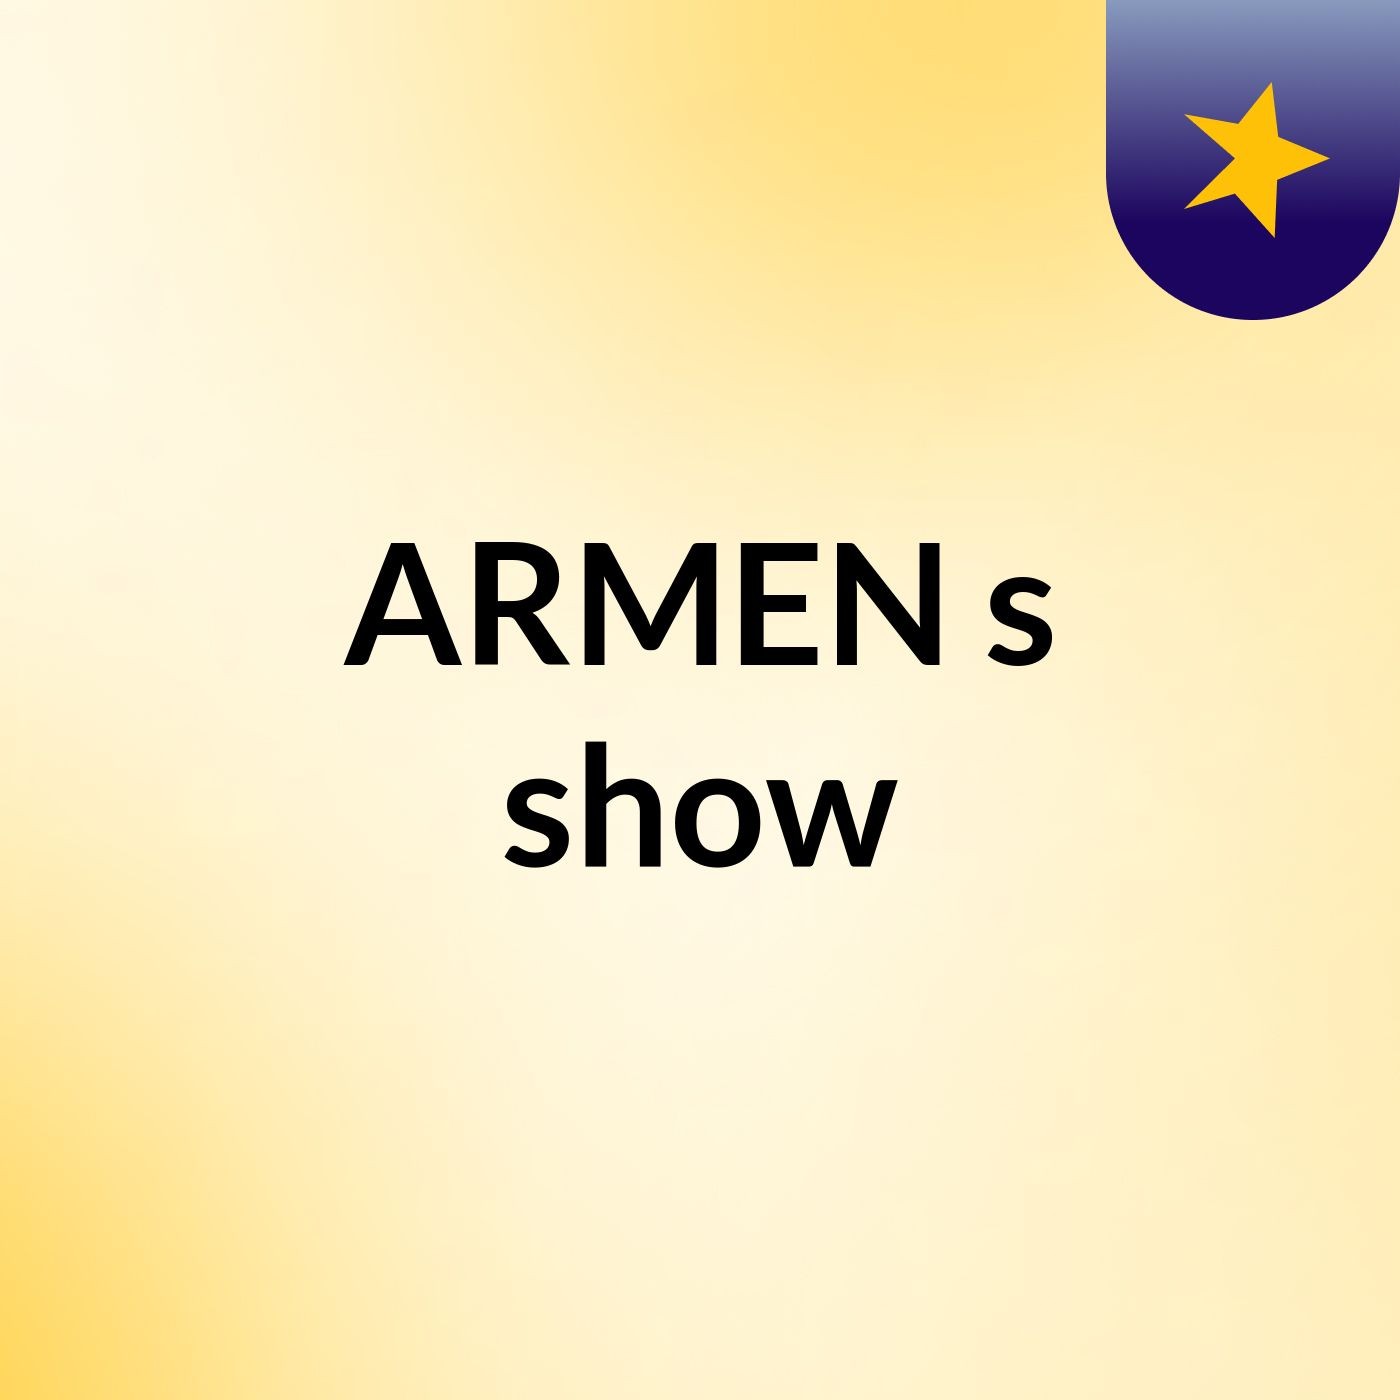 ARMEN's show